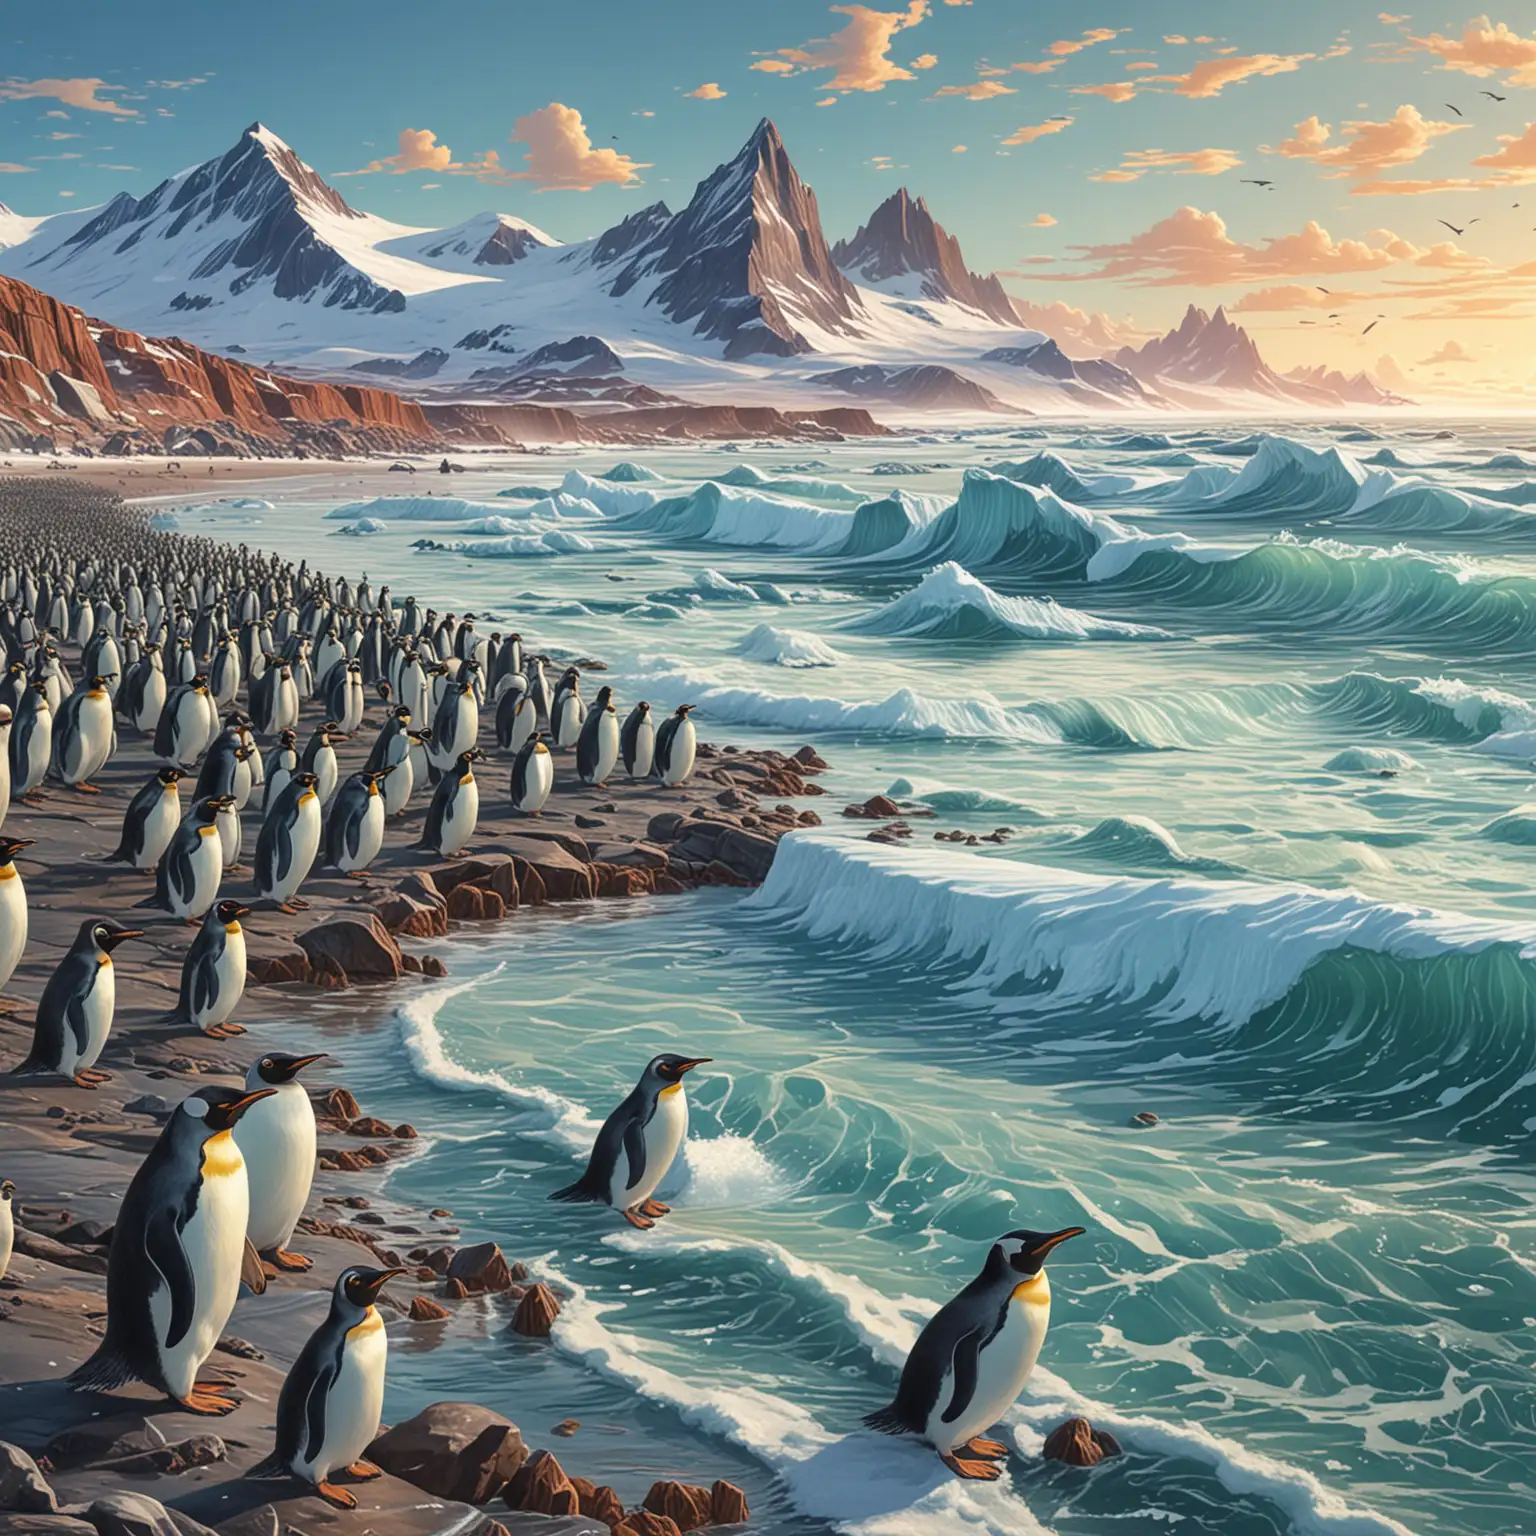 illustration,  neuronalen Stiltransfer, hintergrund : antraktika
Die tierreiche Küste der Antarktis: Entlang der Küstenlinie der Antarktis finden sich lebendige Kolonien von Pinguinen, Robben und Seevögeln, die das Leben in dieser unwirtlichen Umgebung zeigen. Tausende von Pinguinen watscheln über das Eis, während Robben faul in der Sonne liegen und Vögel elegant über die Wellen gleiten. Der Anblick und die Geräusche dieser reichen Tierwelt verleihen der eisigen Landschaft eine unerwartete Lebendigkeit und Energie.